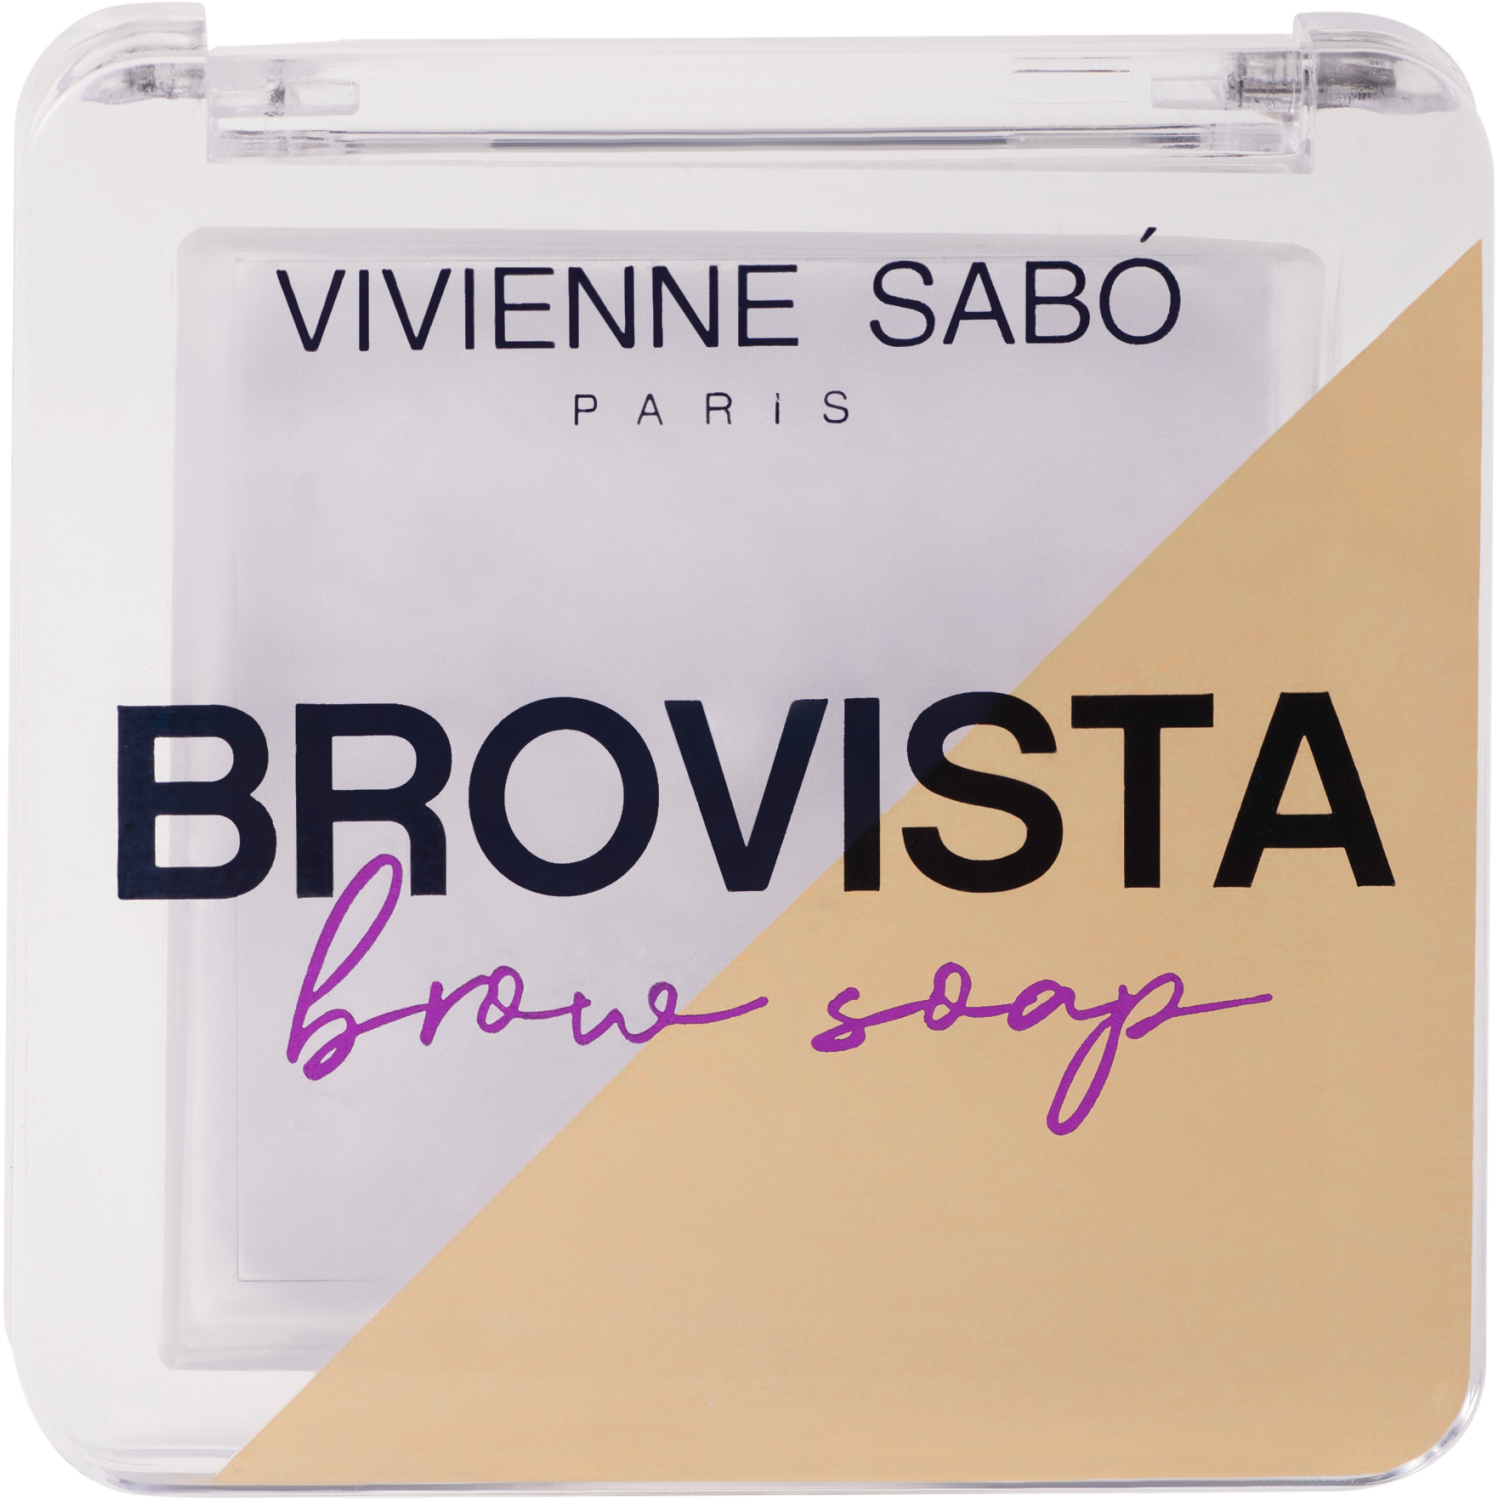 Фиксатор для бровей Vivienne Sabo Brovista brow soap, эффект ламинирования бровей, прозрачно-белесый, 3гр. карандаш контурный для бровей тон 202